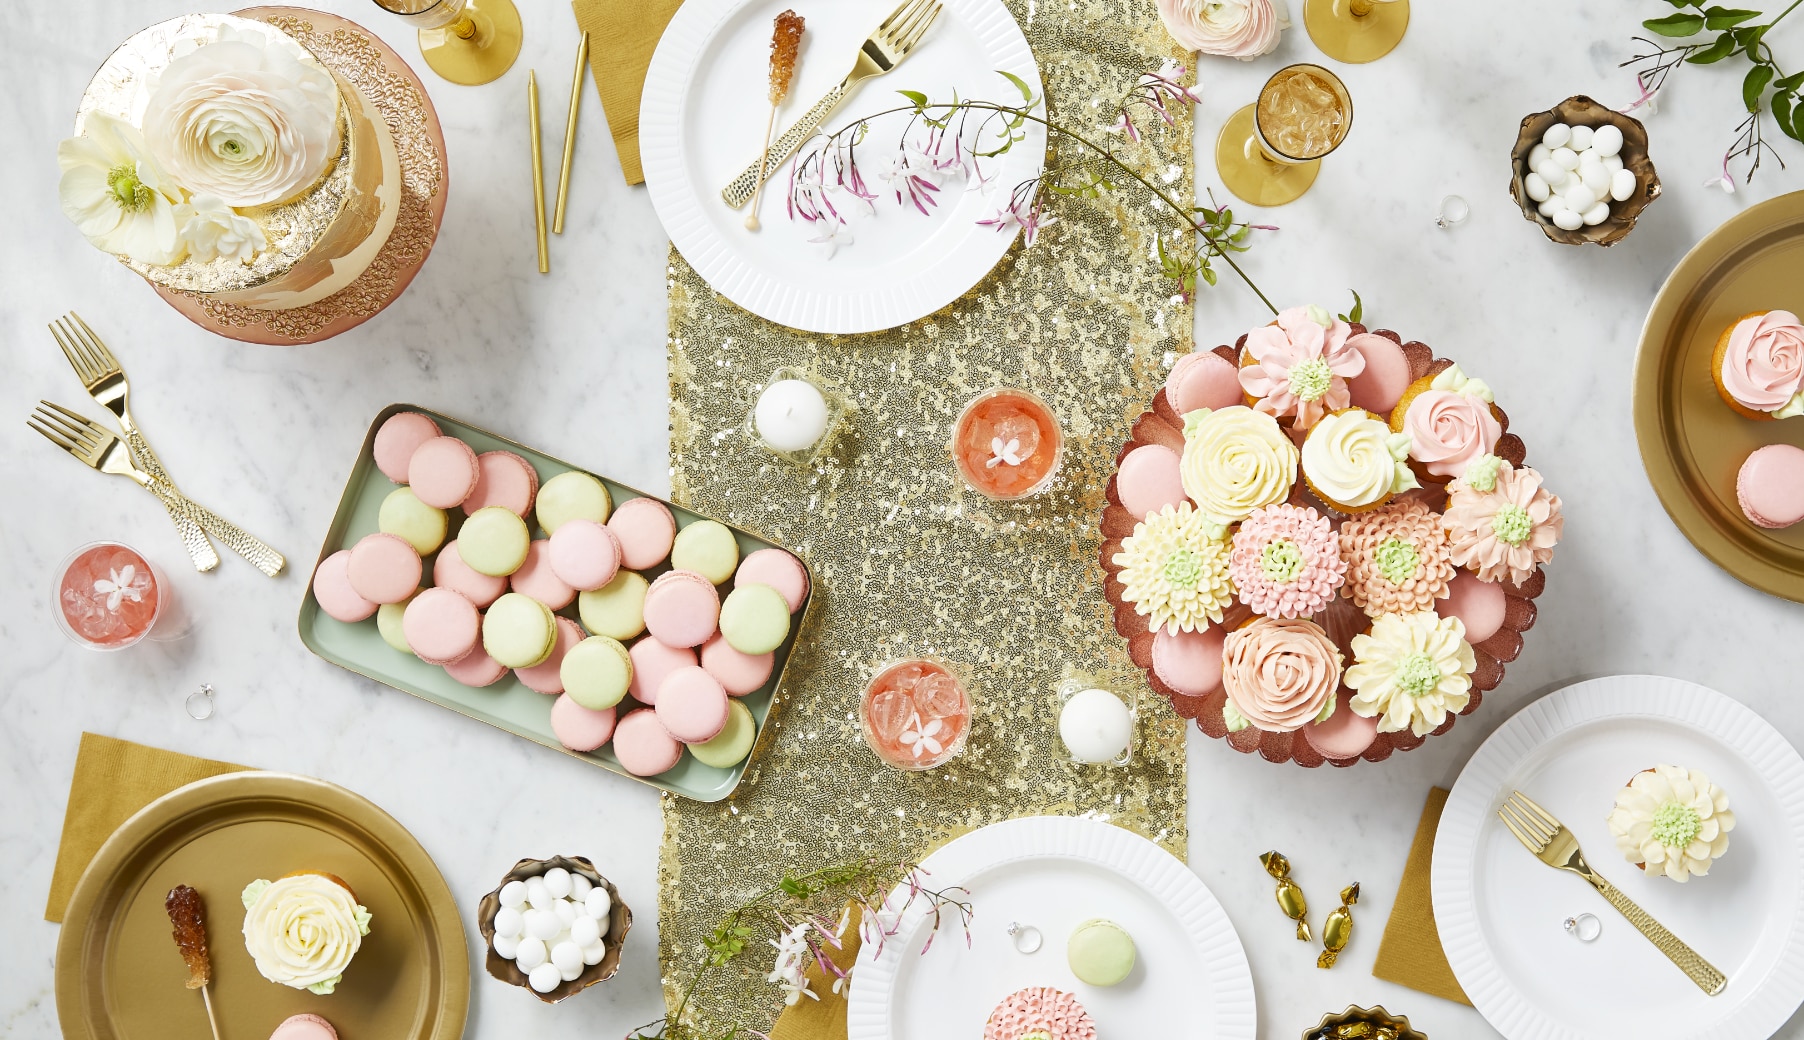 Une table à desserts avec des décorations blanches, roses et dorées, des assiettes, des biscuits et des petits gâteaux.